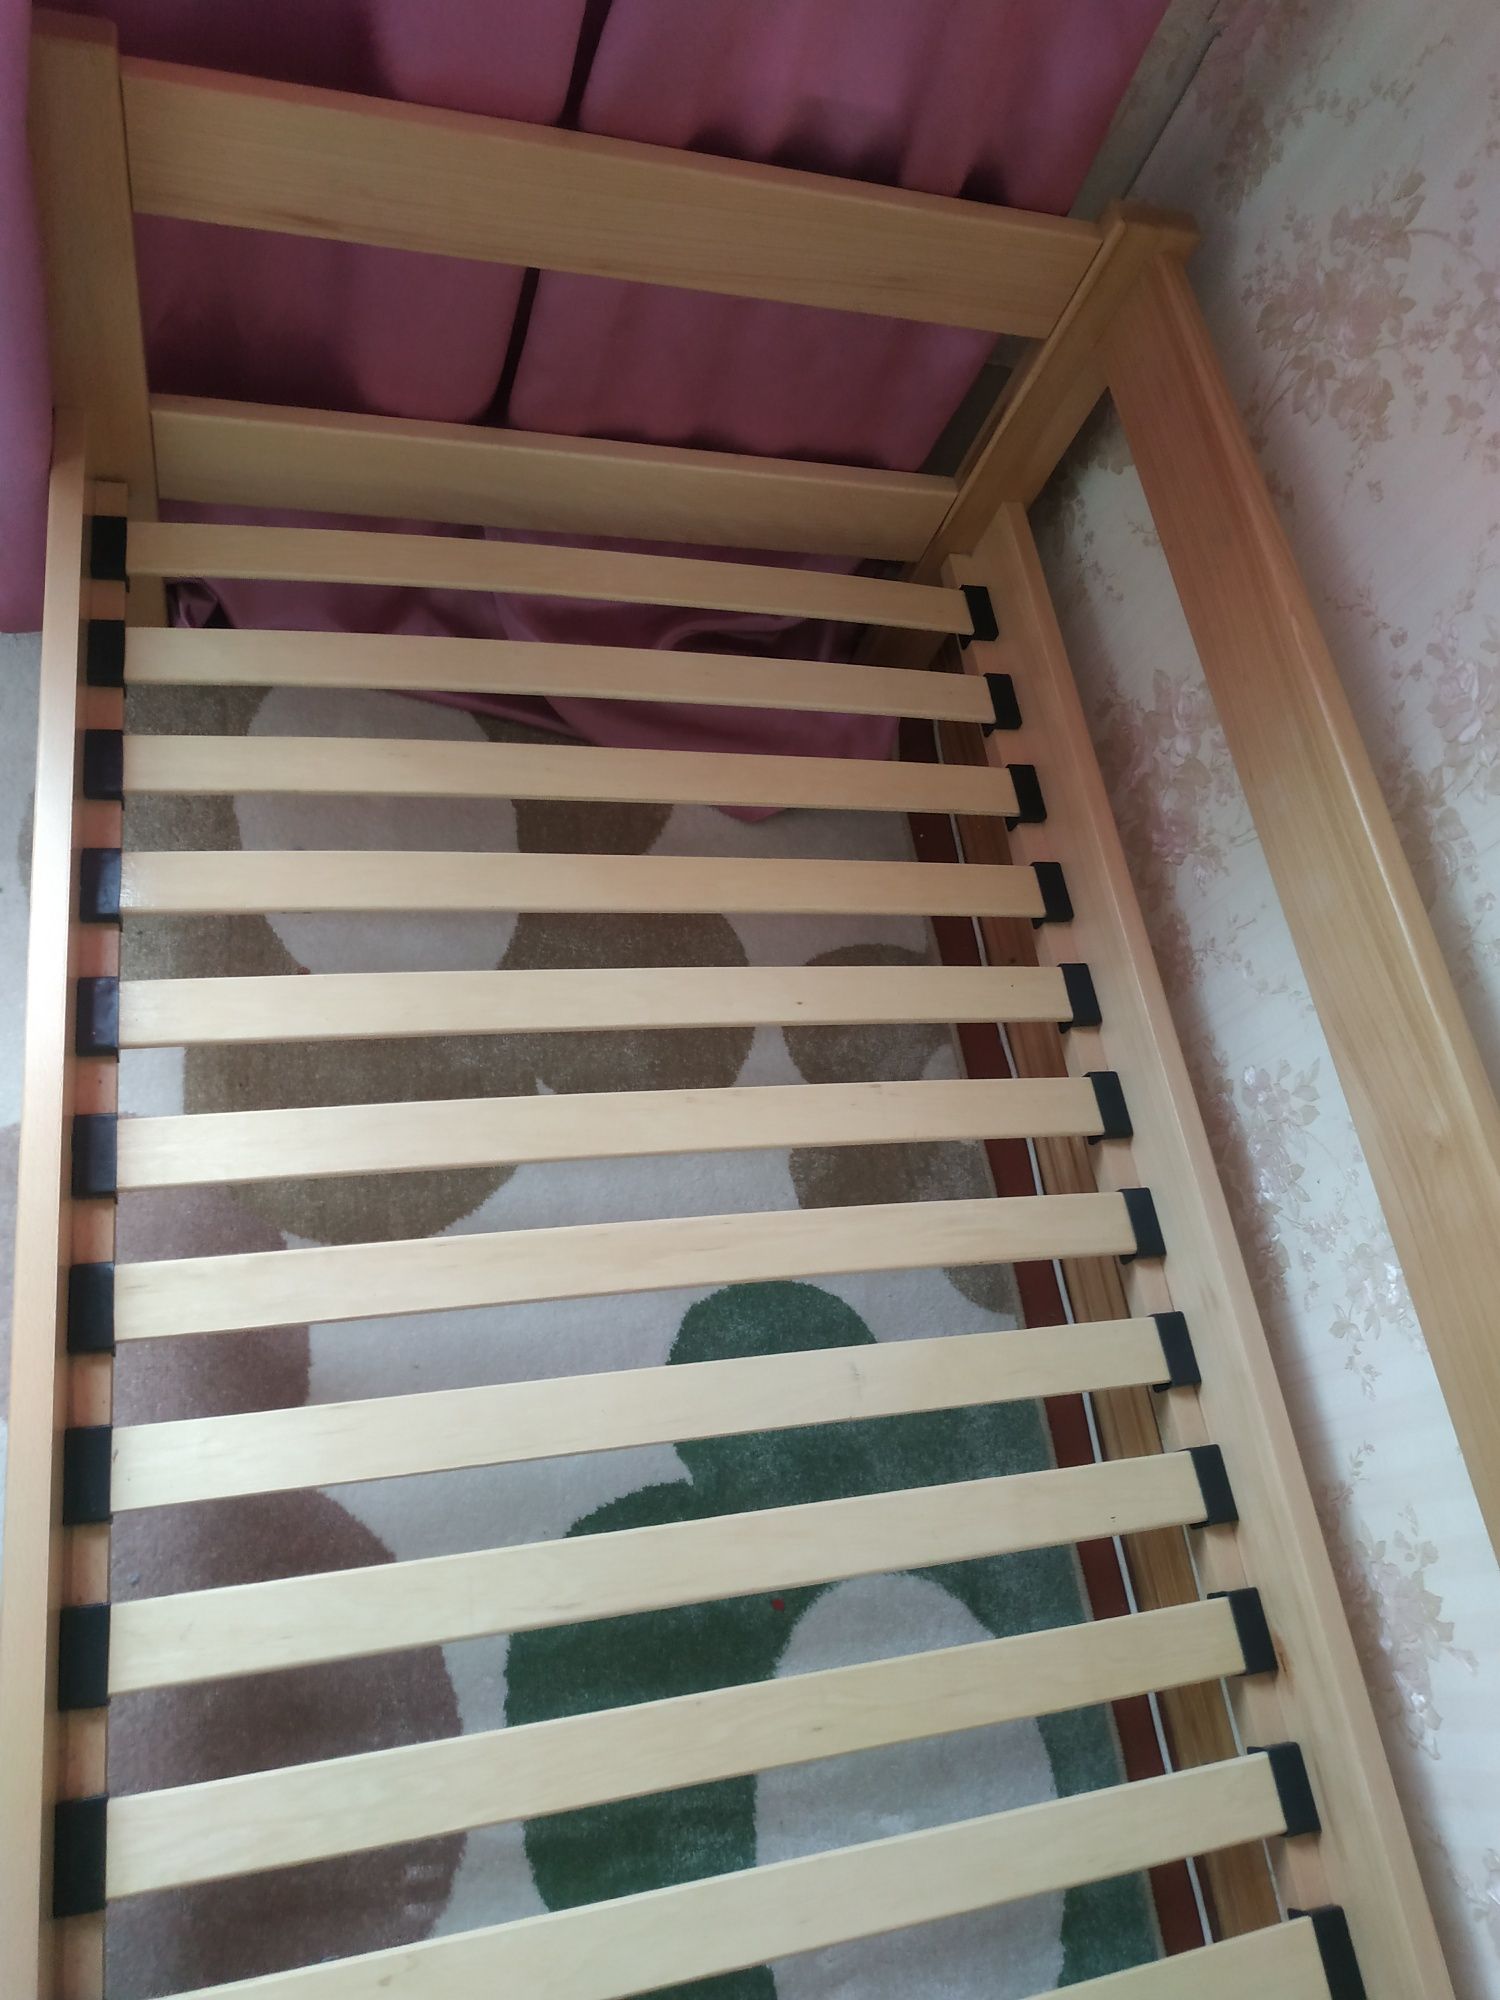 Ліжко дерев'яне з матрацом Велам Агат  190*80